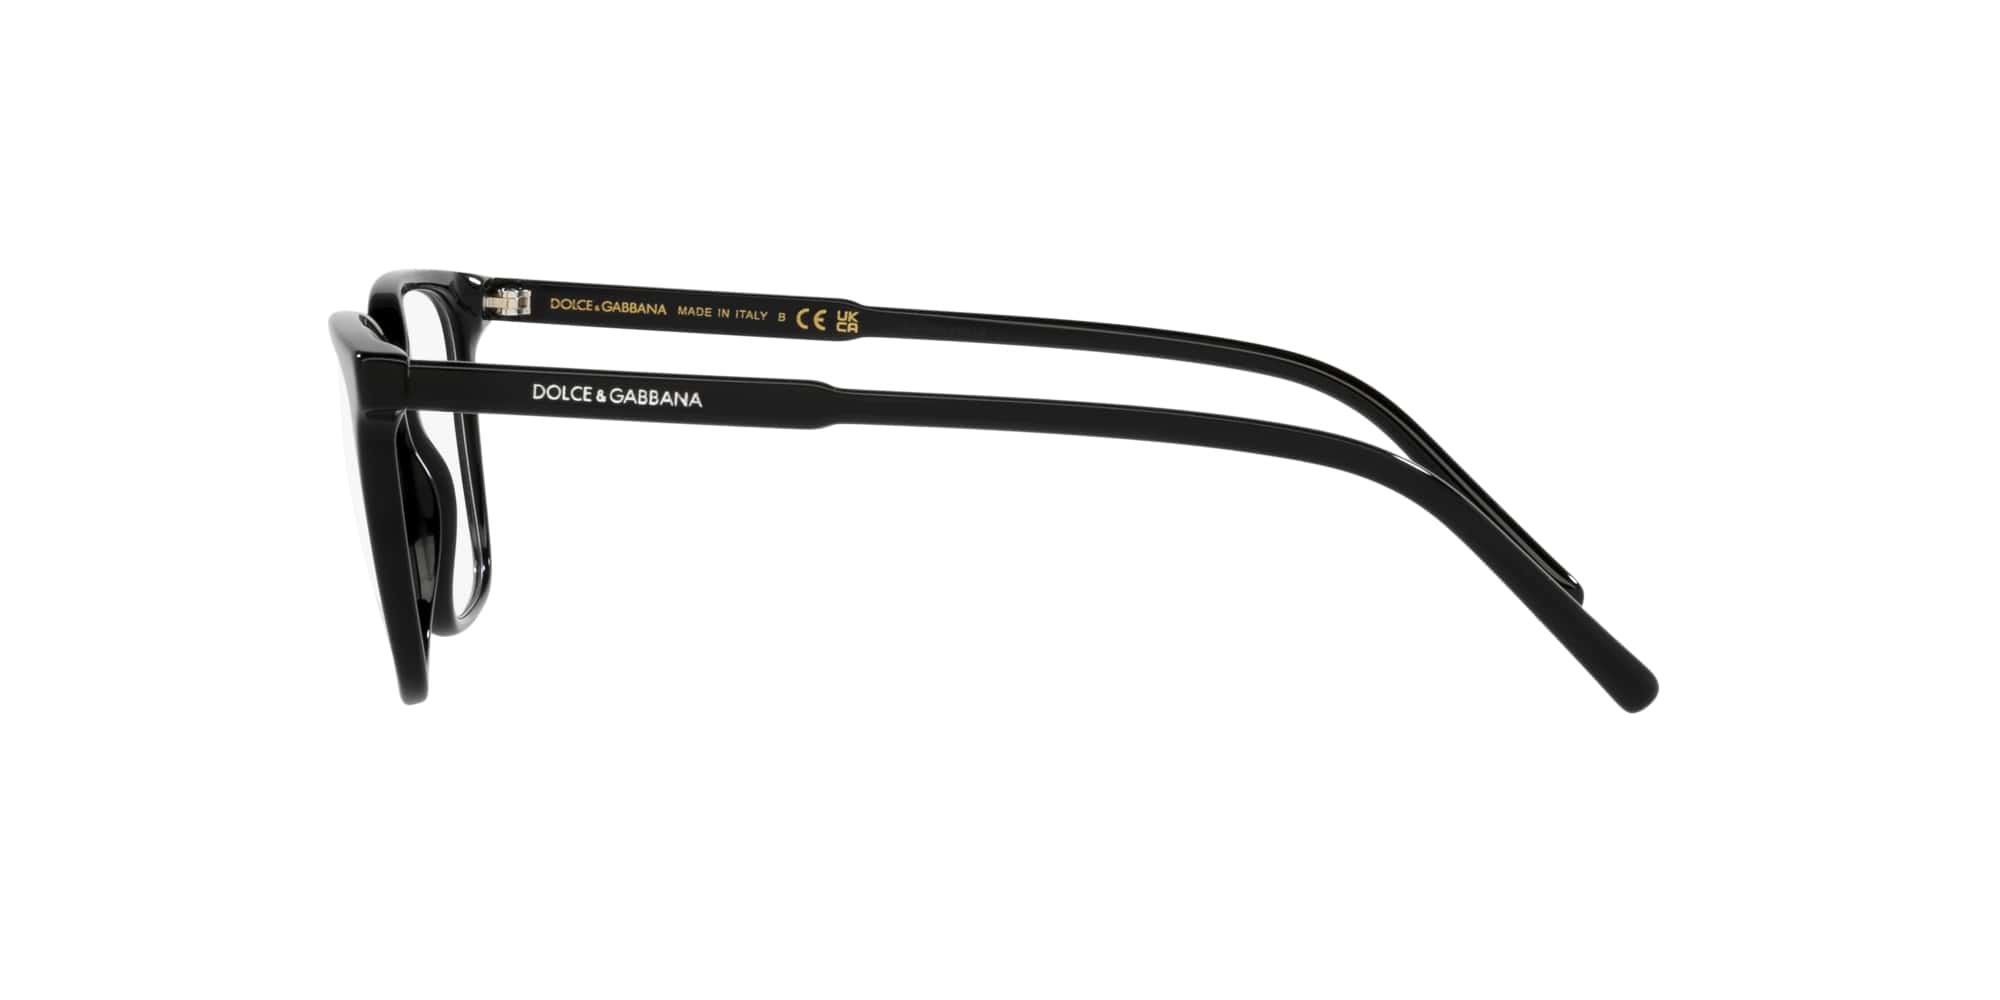 Das Bild zeigt die Korrektionsbrille DG3365 501 von der Marke D&G in schwarz.